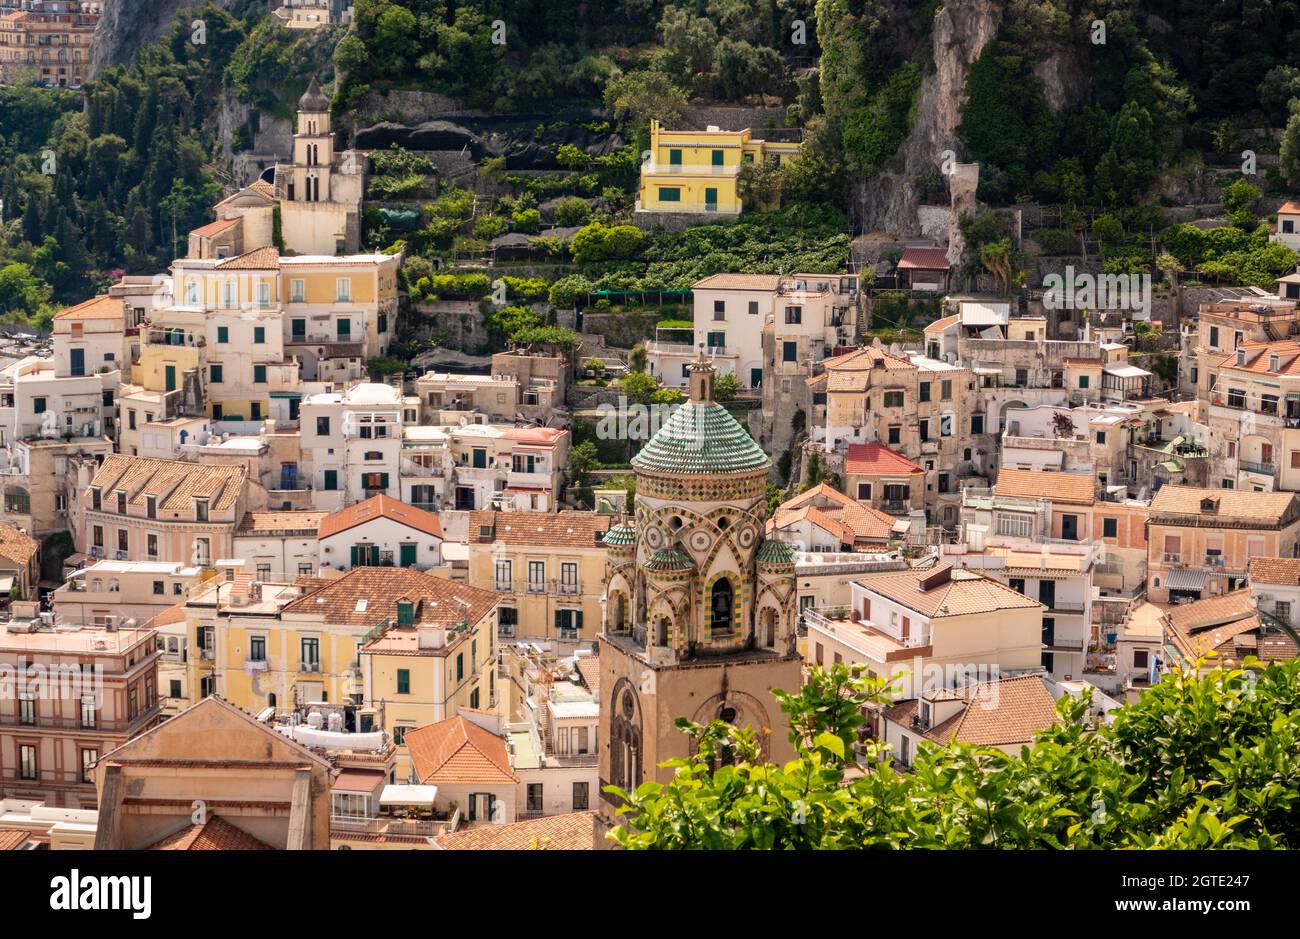 La ville d'Amalfi sur la côte amalfitaine, Salerne, Campanie, Italie Banque D'Images